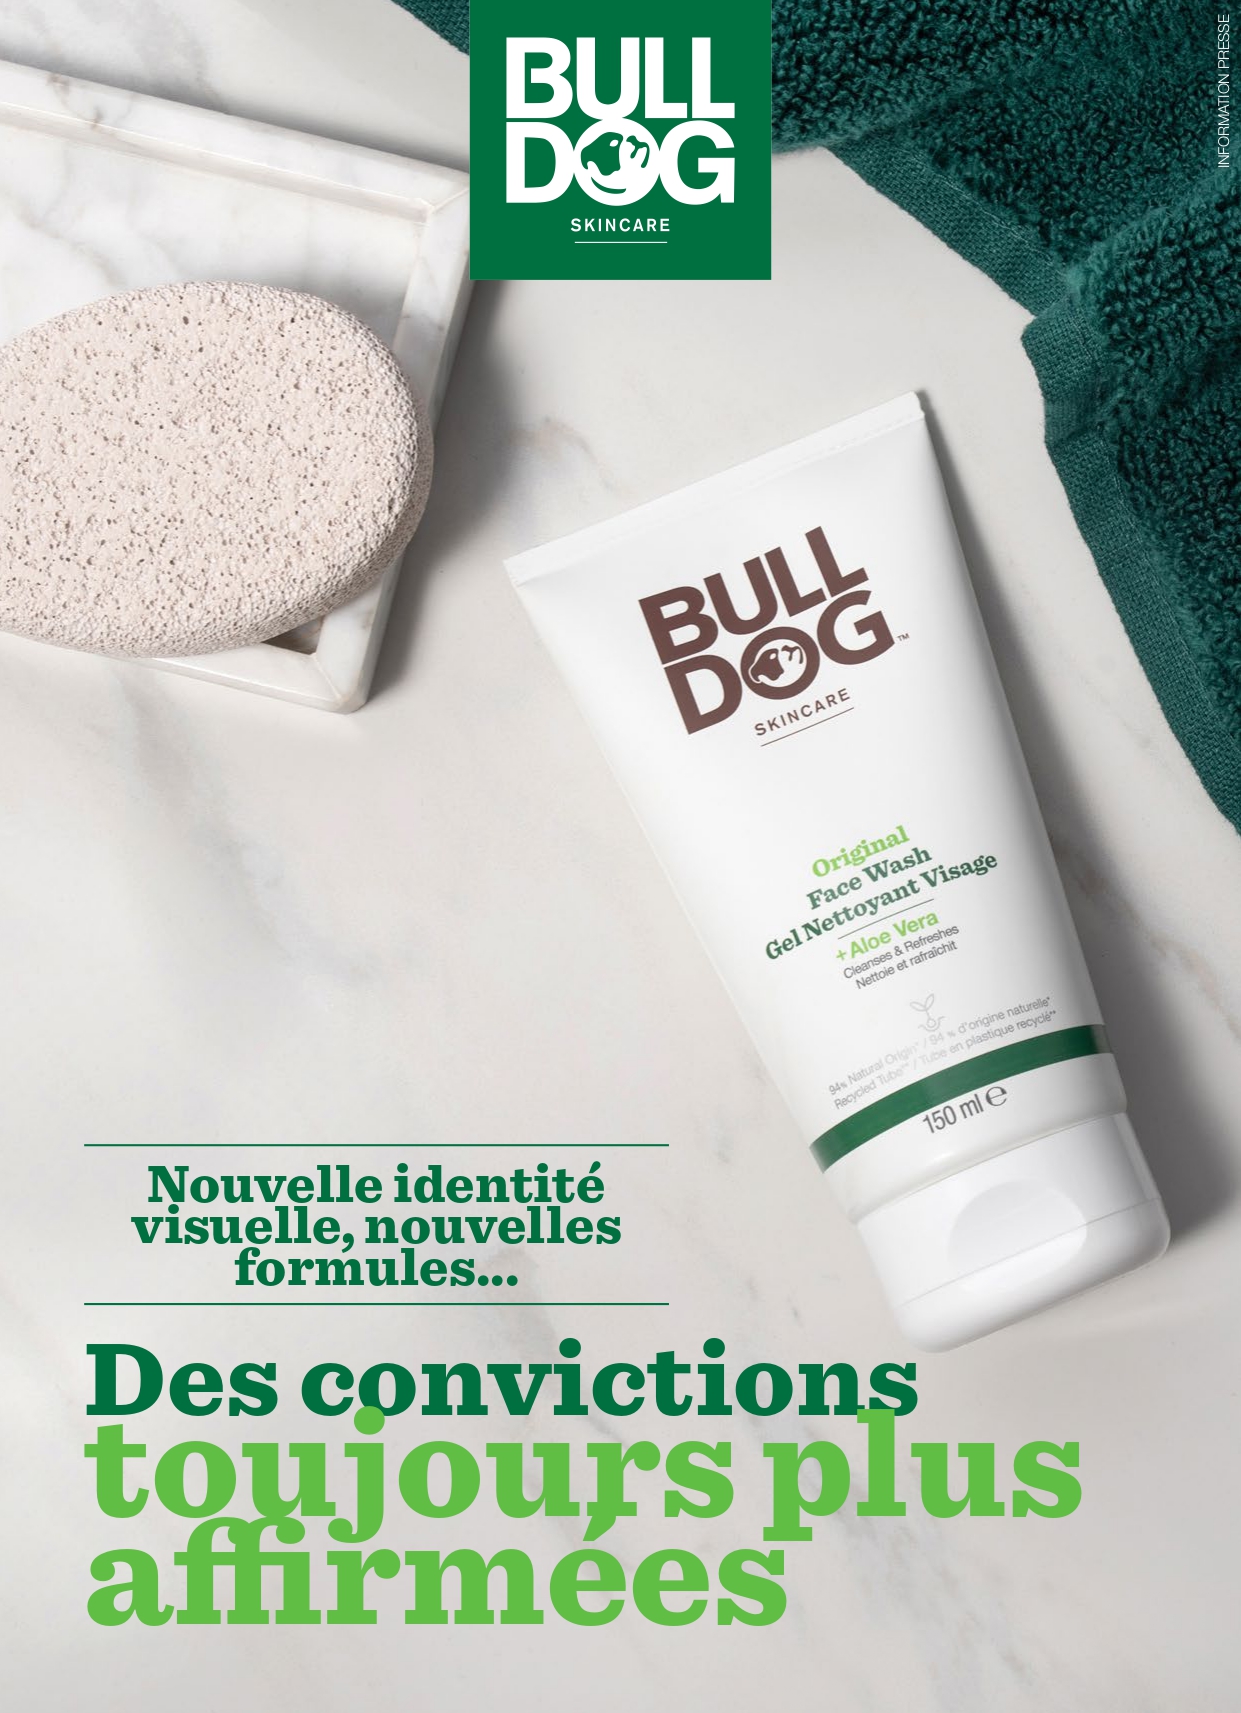 Bulldog skincare | Nouveautés